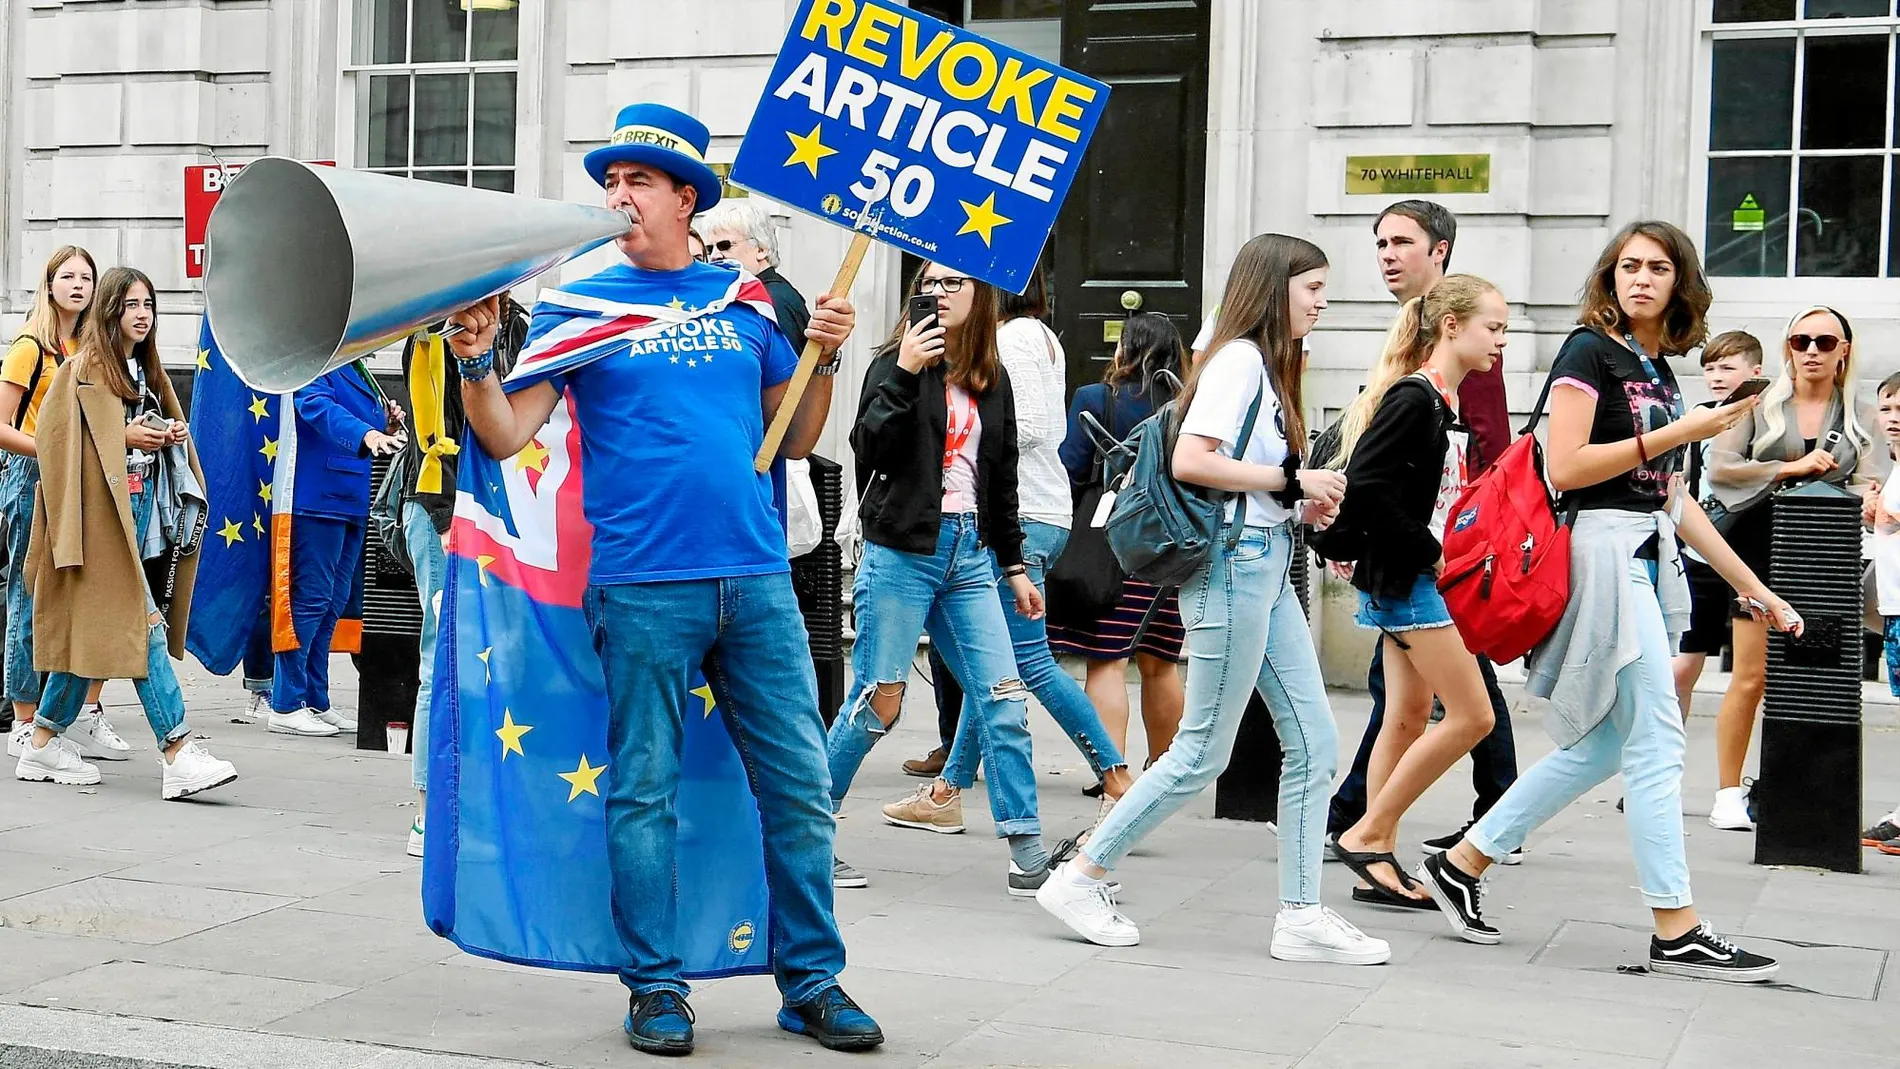 Las protestas contra el Brexit y contra Boris Johnson se suceden en Londres. Ayer, el activista Steve Bray se manifiesta en las inmediaciones de Downing Street / Efe